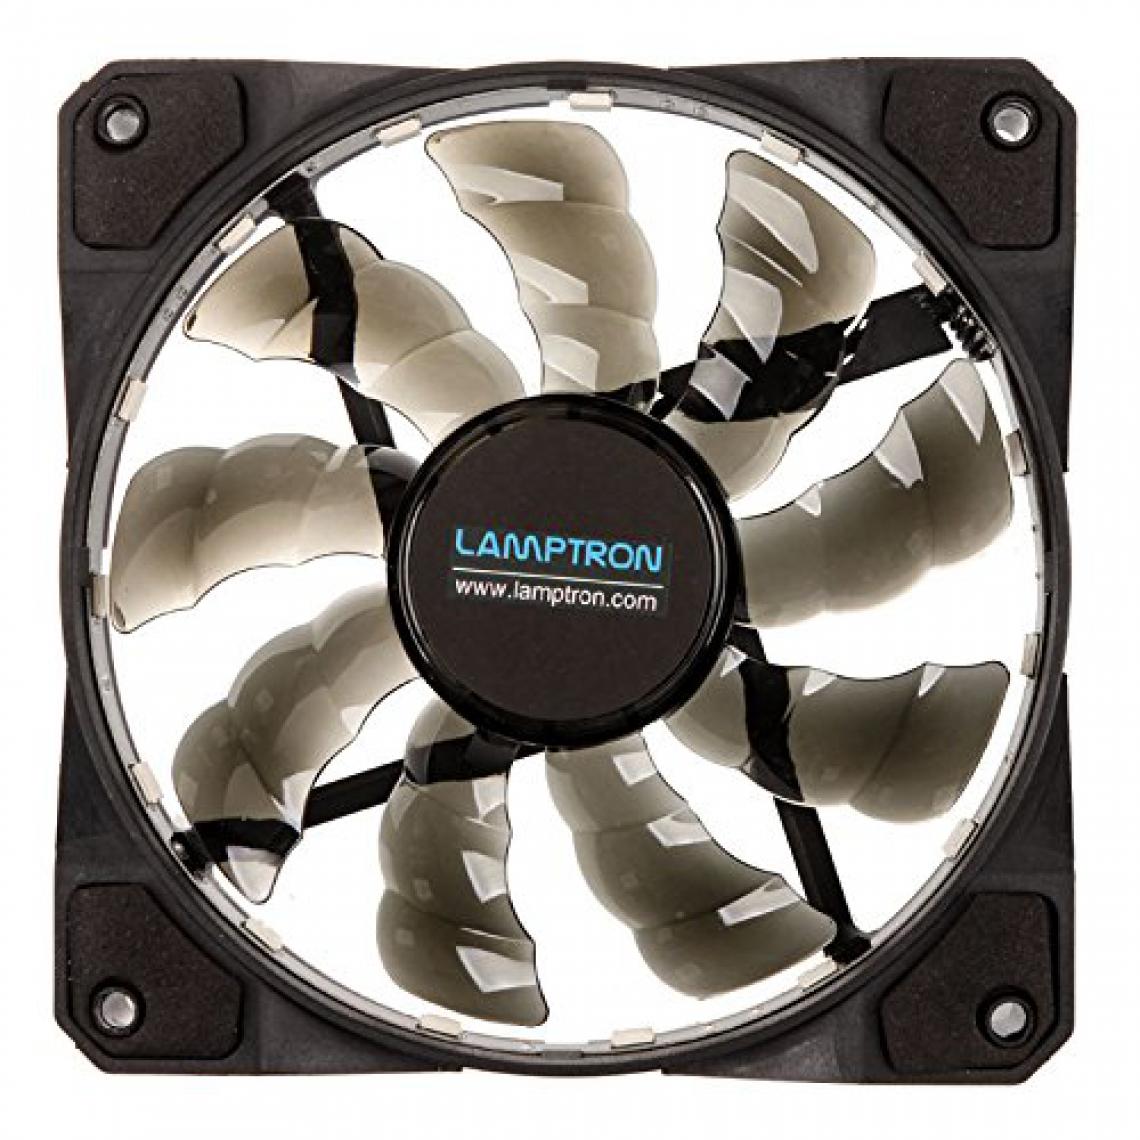 Lamptron - Ventilateur anneau LED RGB Meteor - 120mm - Ventilateur Pour Boîtier